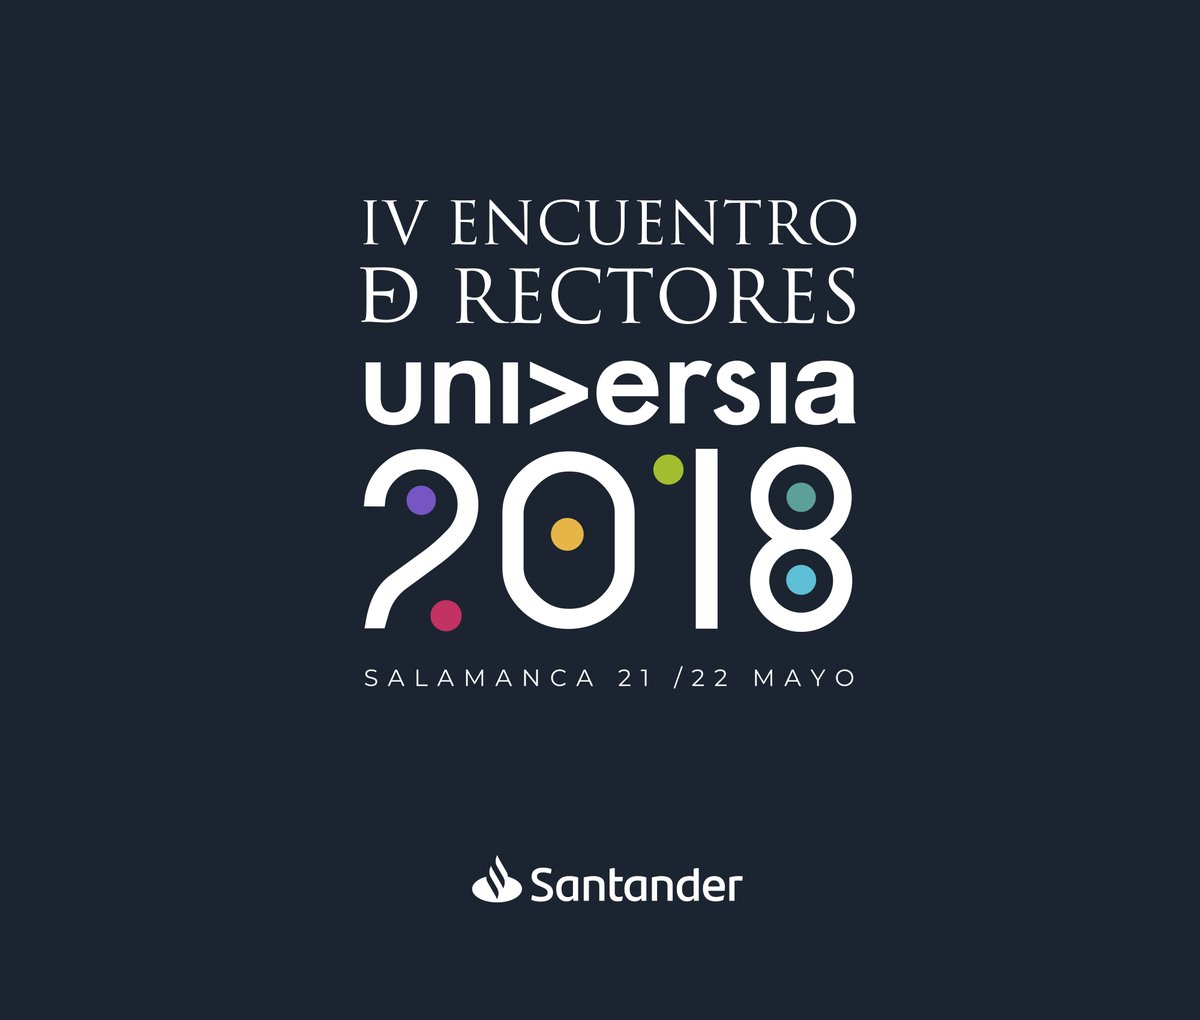 IV Encuentro De Rectores Universia 2018.jpg